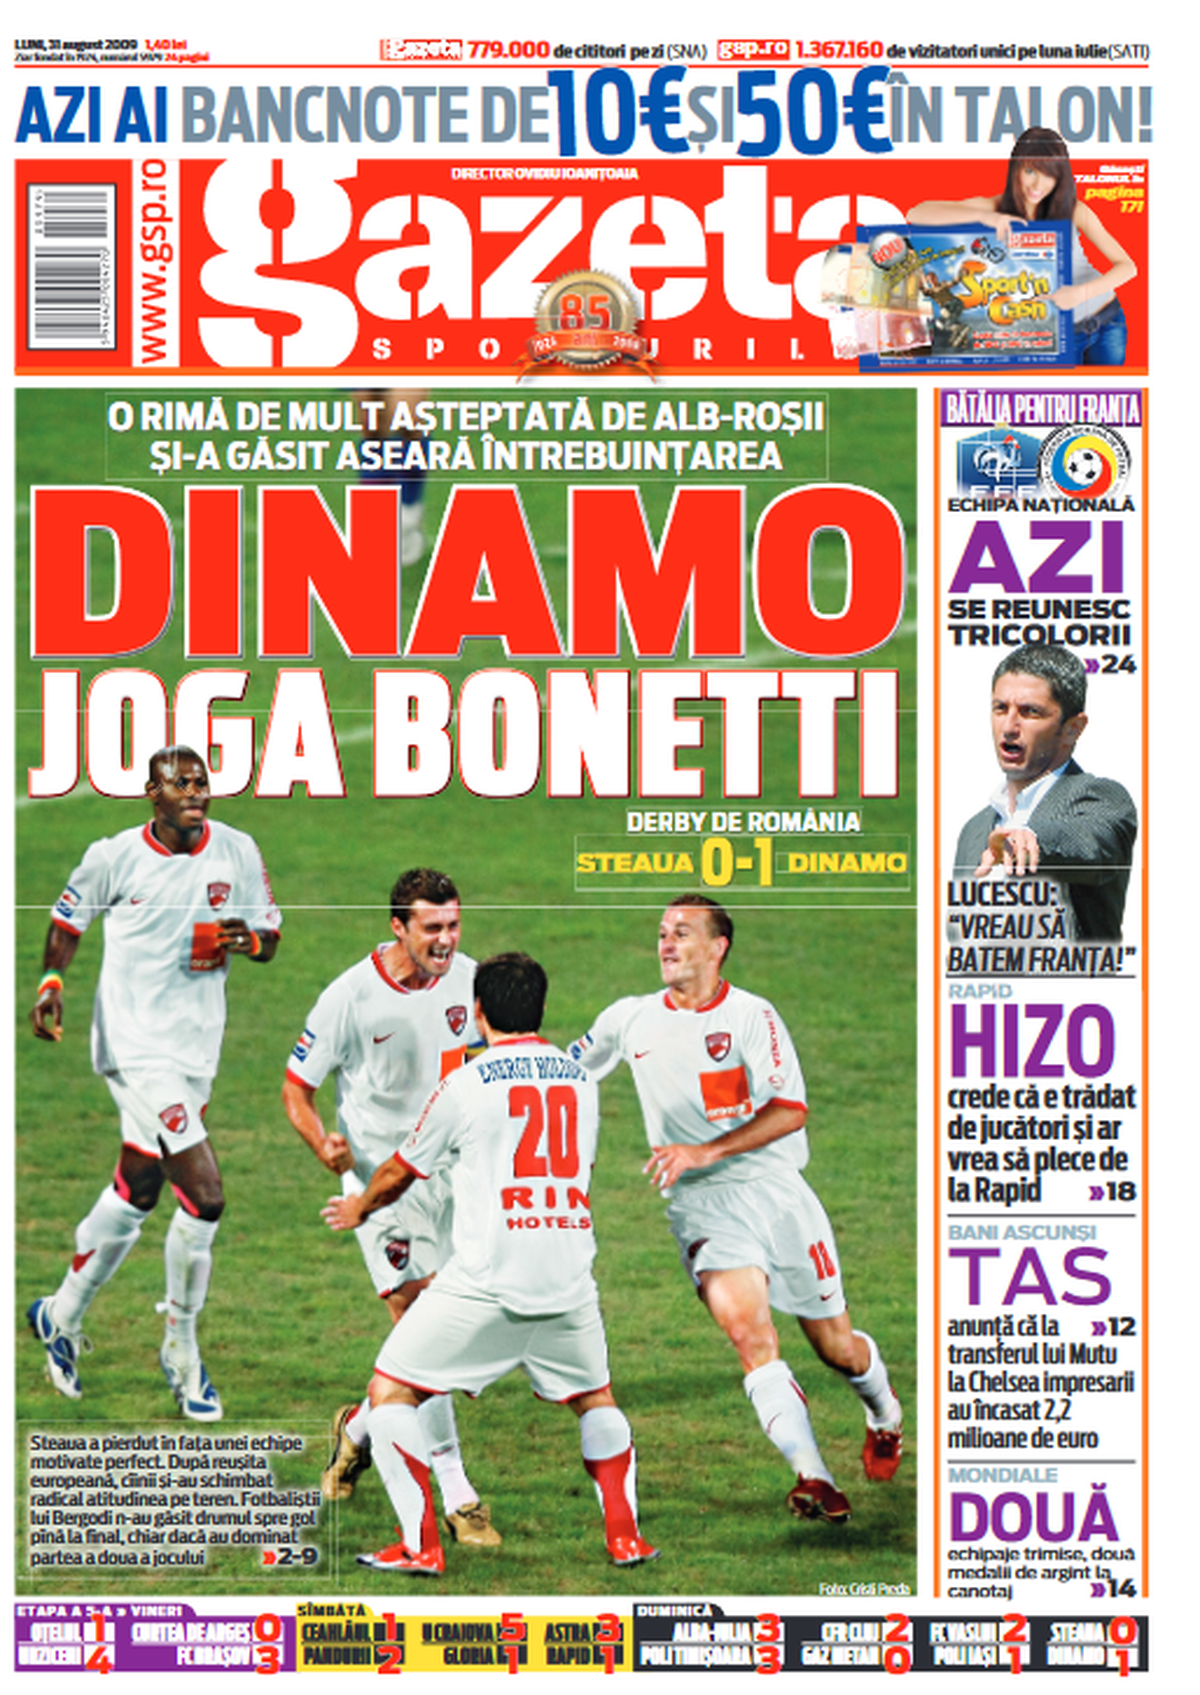 Cum arătau primele pagini din Gazeta Sporturilor de după derby-urile FCSB - Dinamo din Ghencea